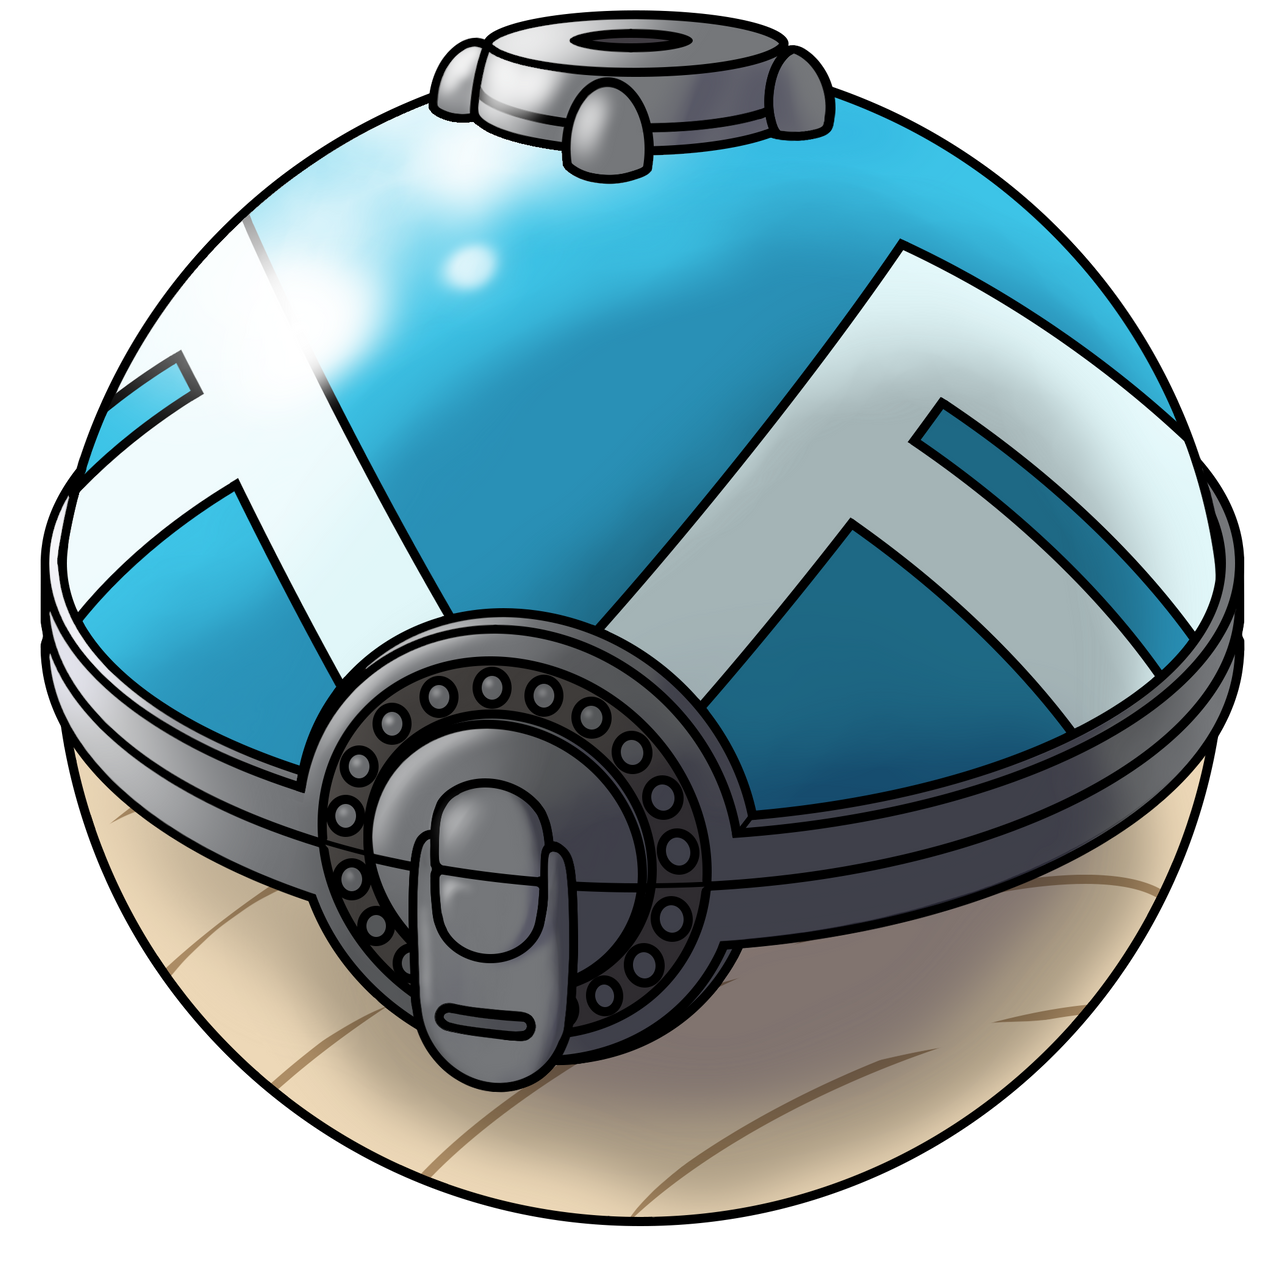 Transparent Poke Ball by Ace-Zeroartic on DeviantArt